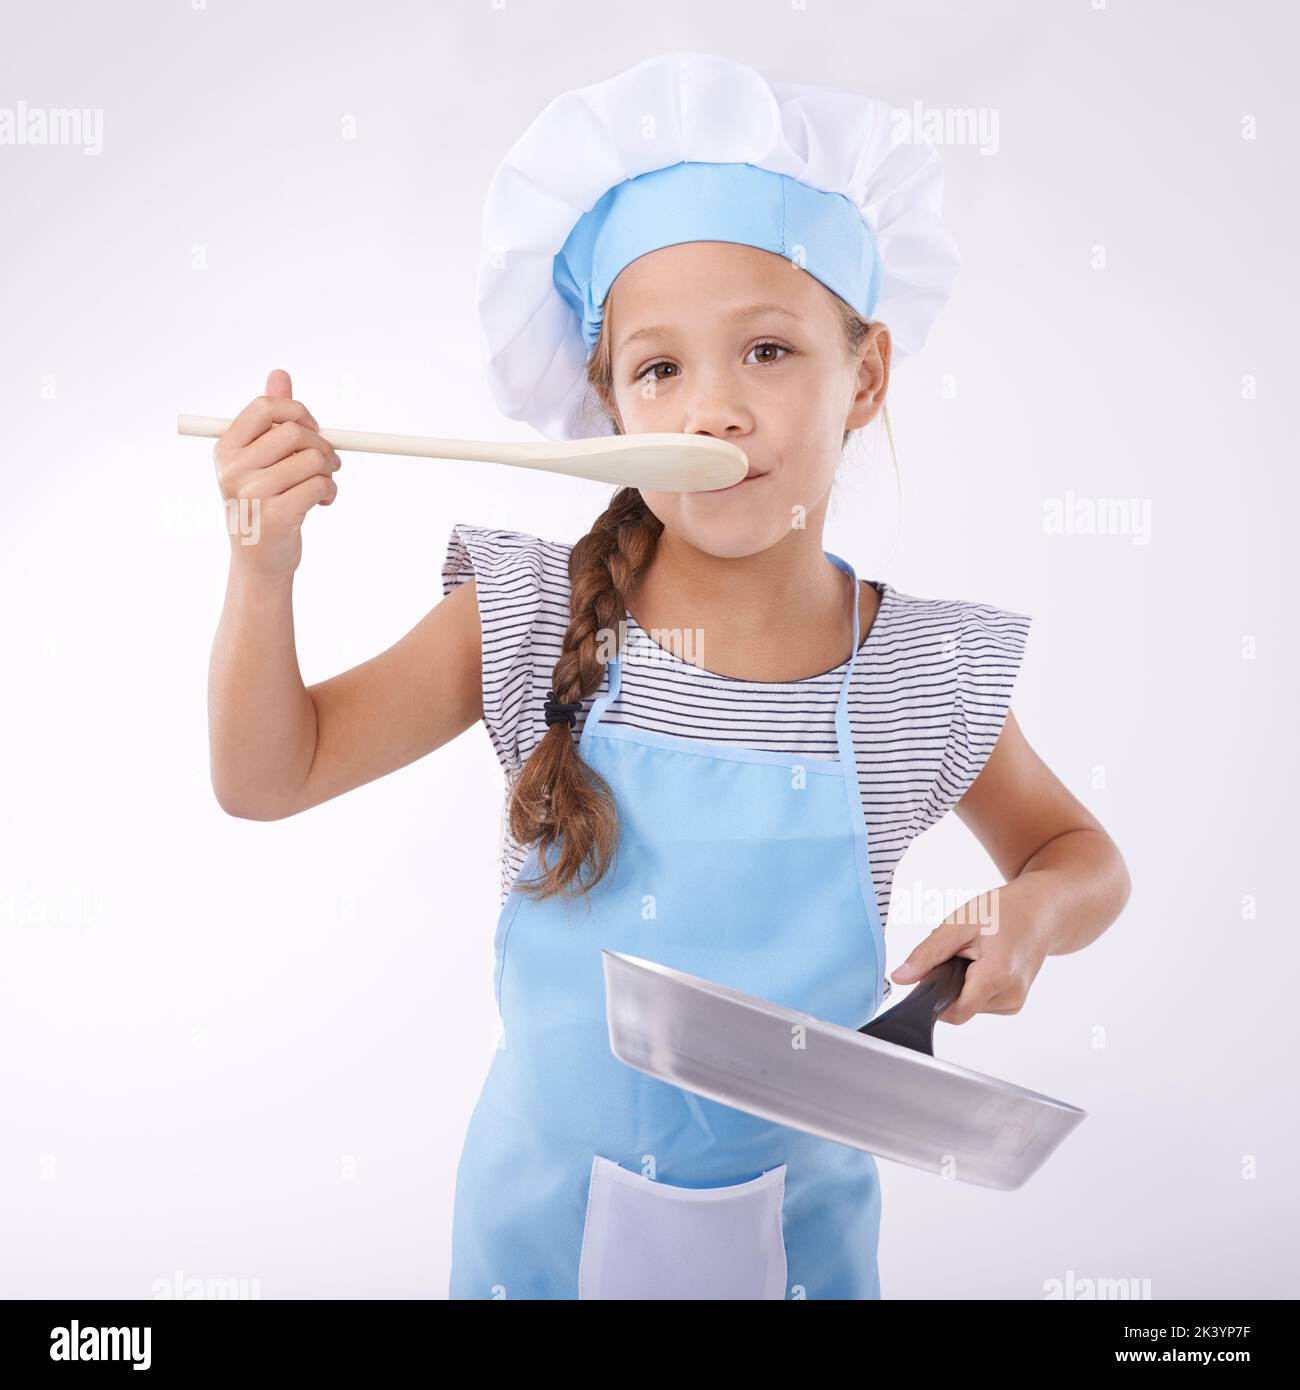 Aprender a cocinar. Retrato de una niña sosteniendo utensilios de cocina. Foto de stock